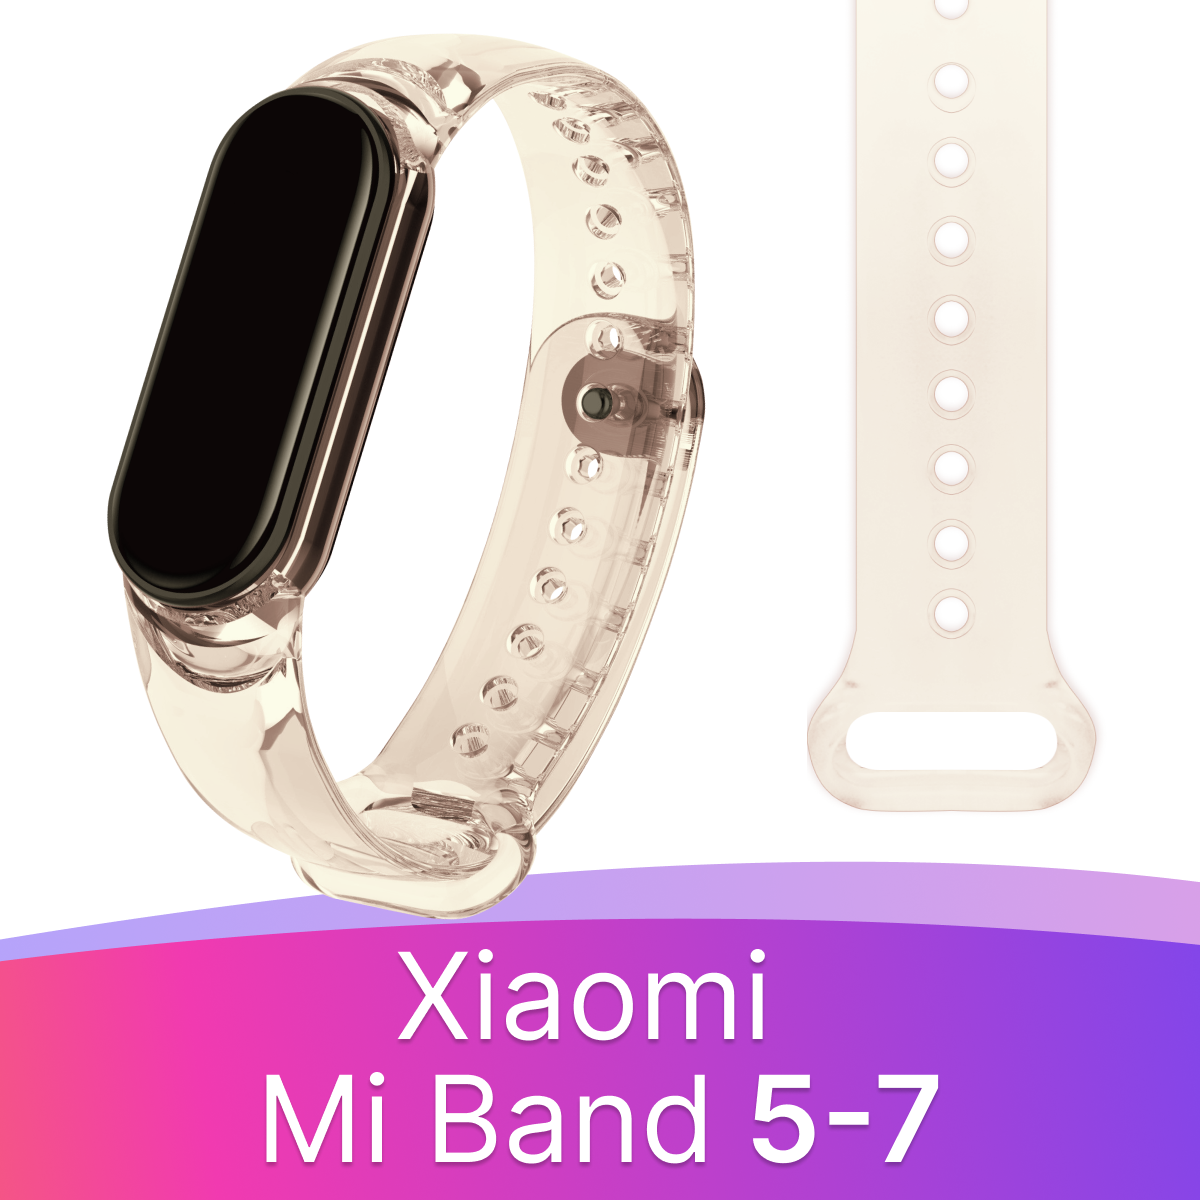 Прозрачный силиконовый ремешок для фитнес-трекера Xiaomi Mi Band 5,6,7 liquid / Спортивный браслет на смарт часы Сяоми Ми Бэнд 5,6,7 (Желтый)